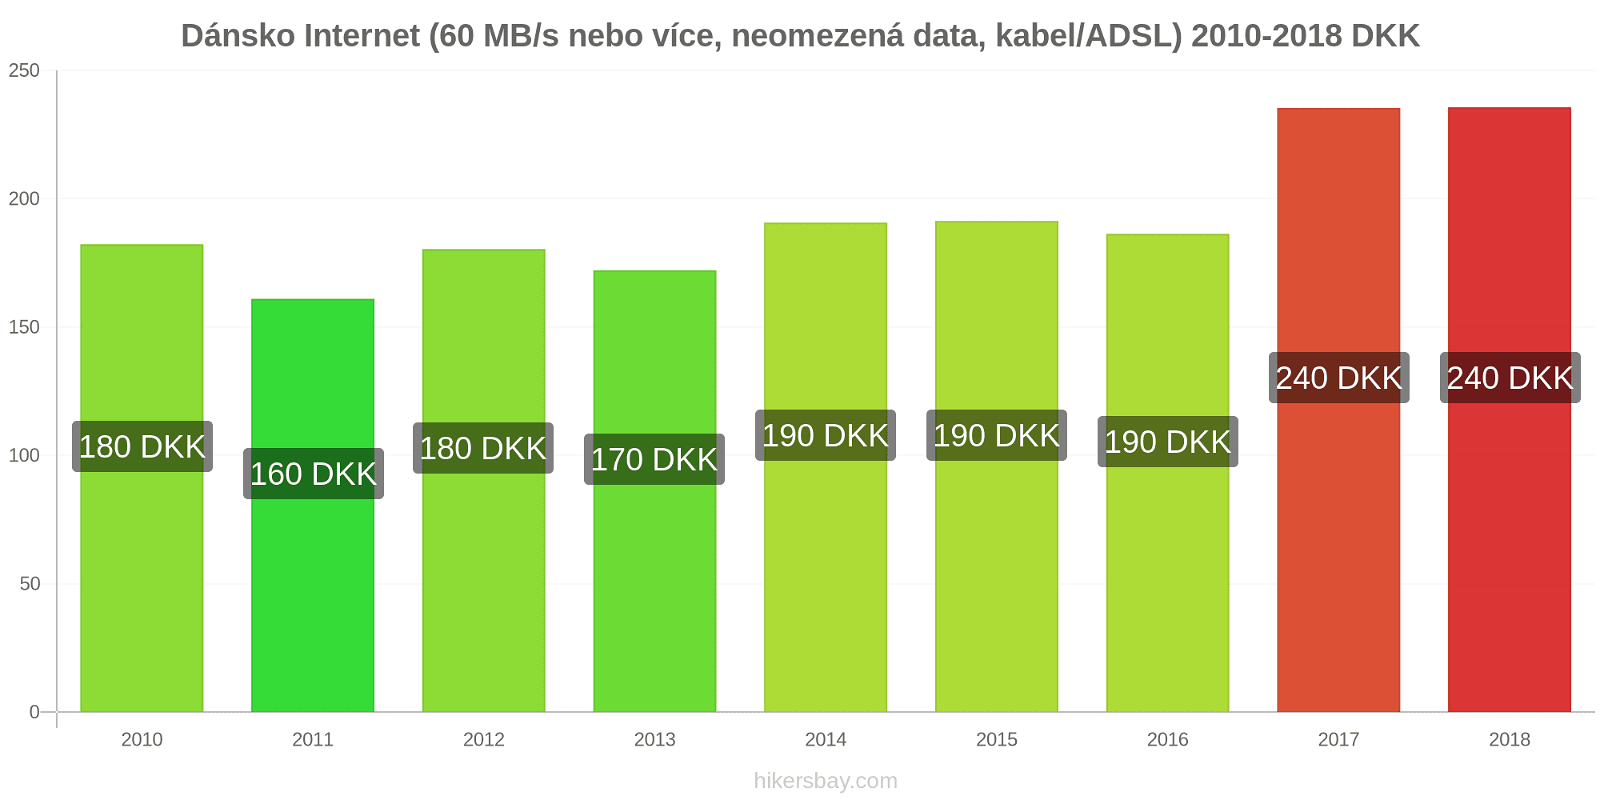 Dánsko změny cen Internet (60 Mbps nebo více, neomezená data, kabel/ADSL) hikersbay.com